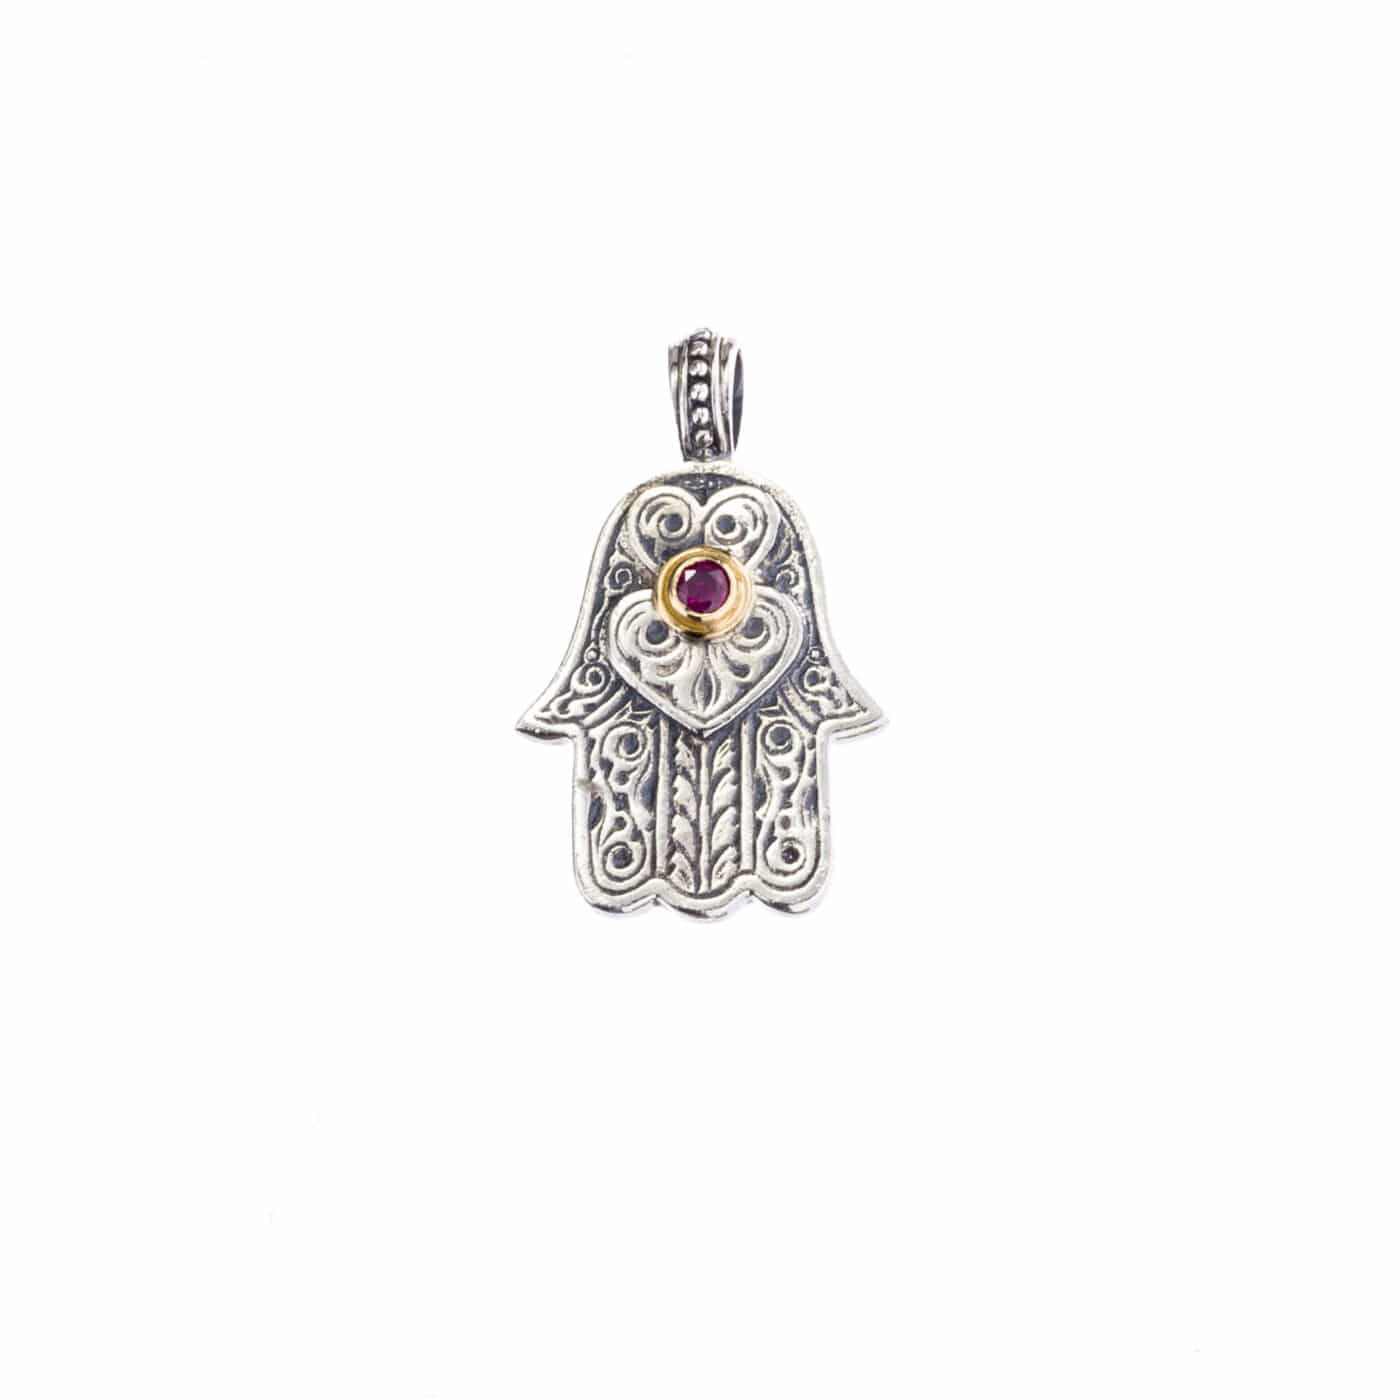 Hamsa hand of fatima pendant - Gerochristo Jewelry